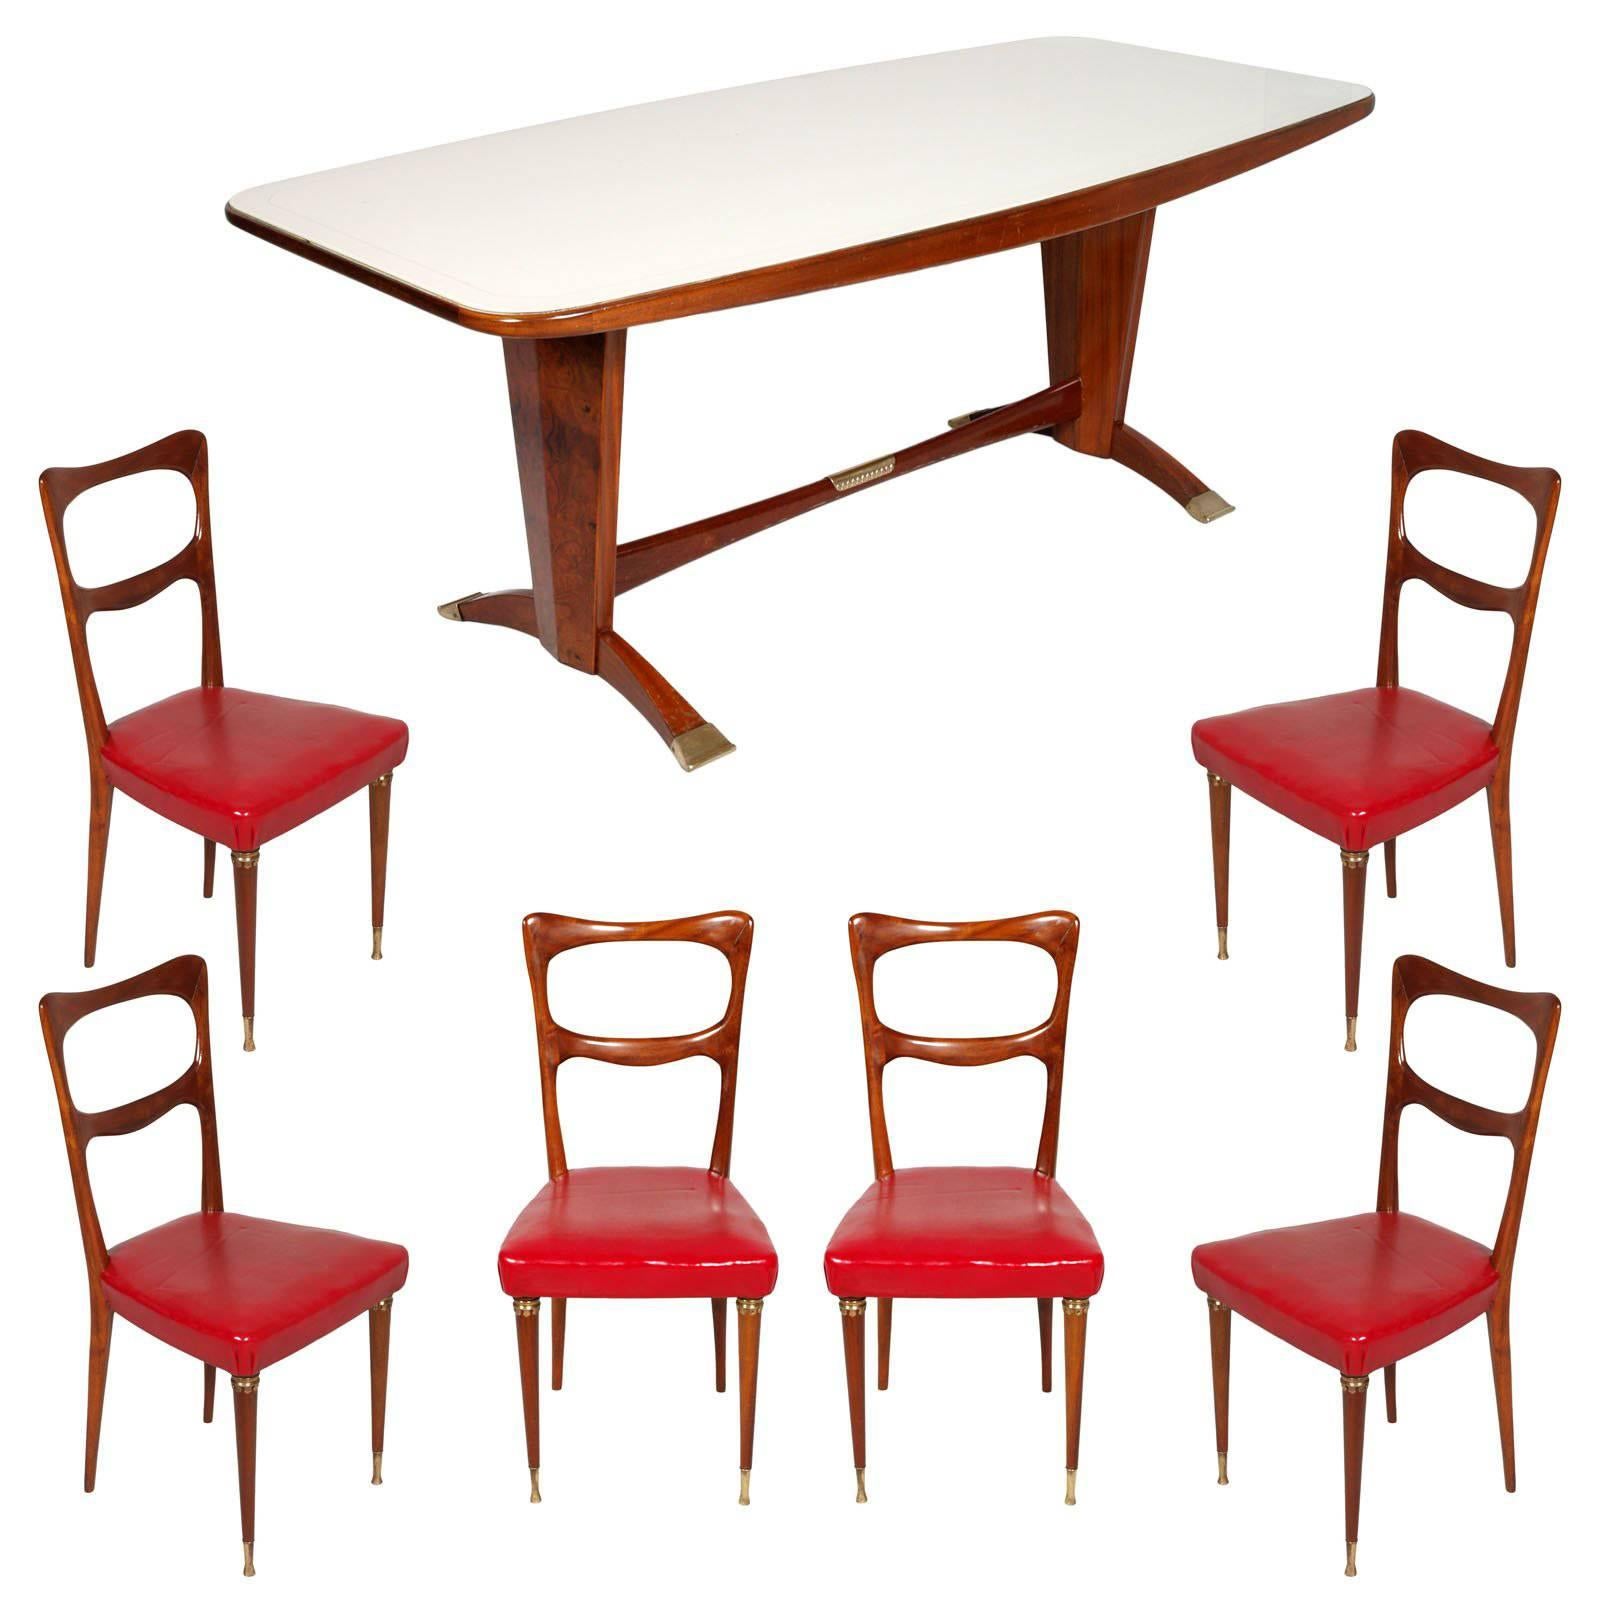 Table de salle à manger et chaises des années 1950 de Cantù, Melchiorre Bega attribué, acajou